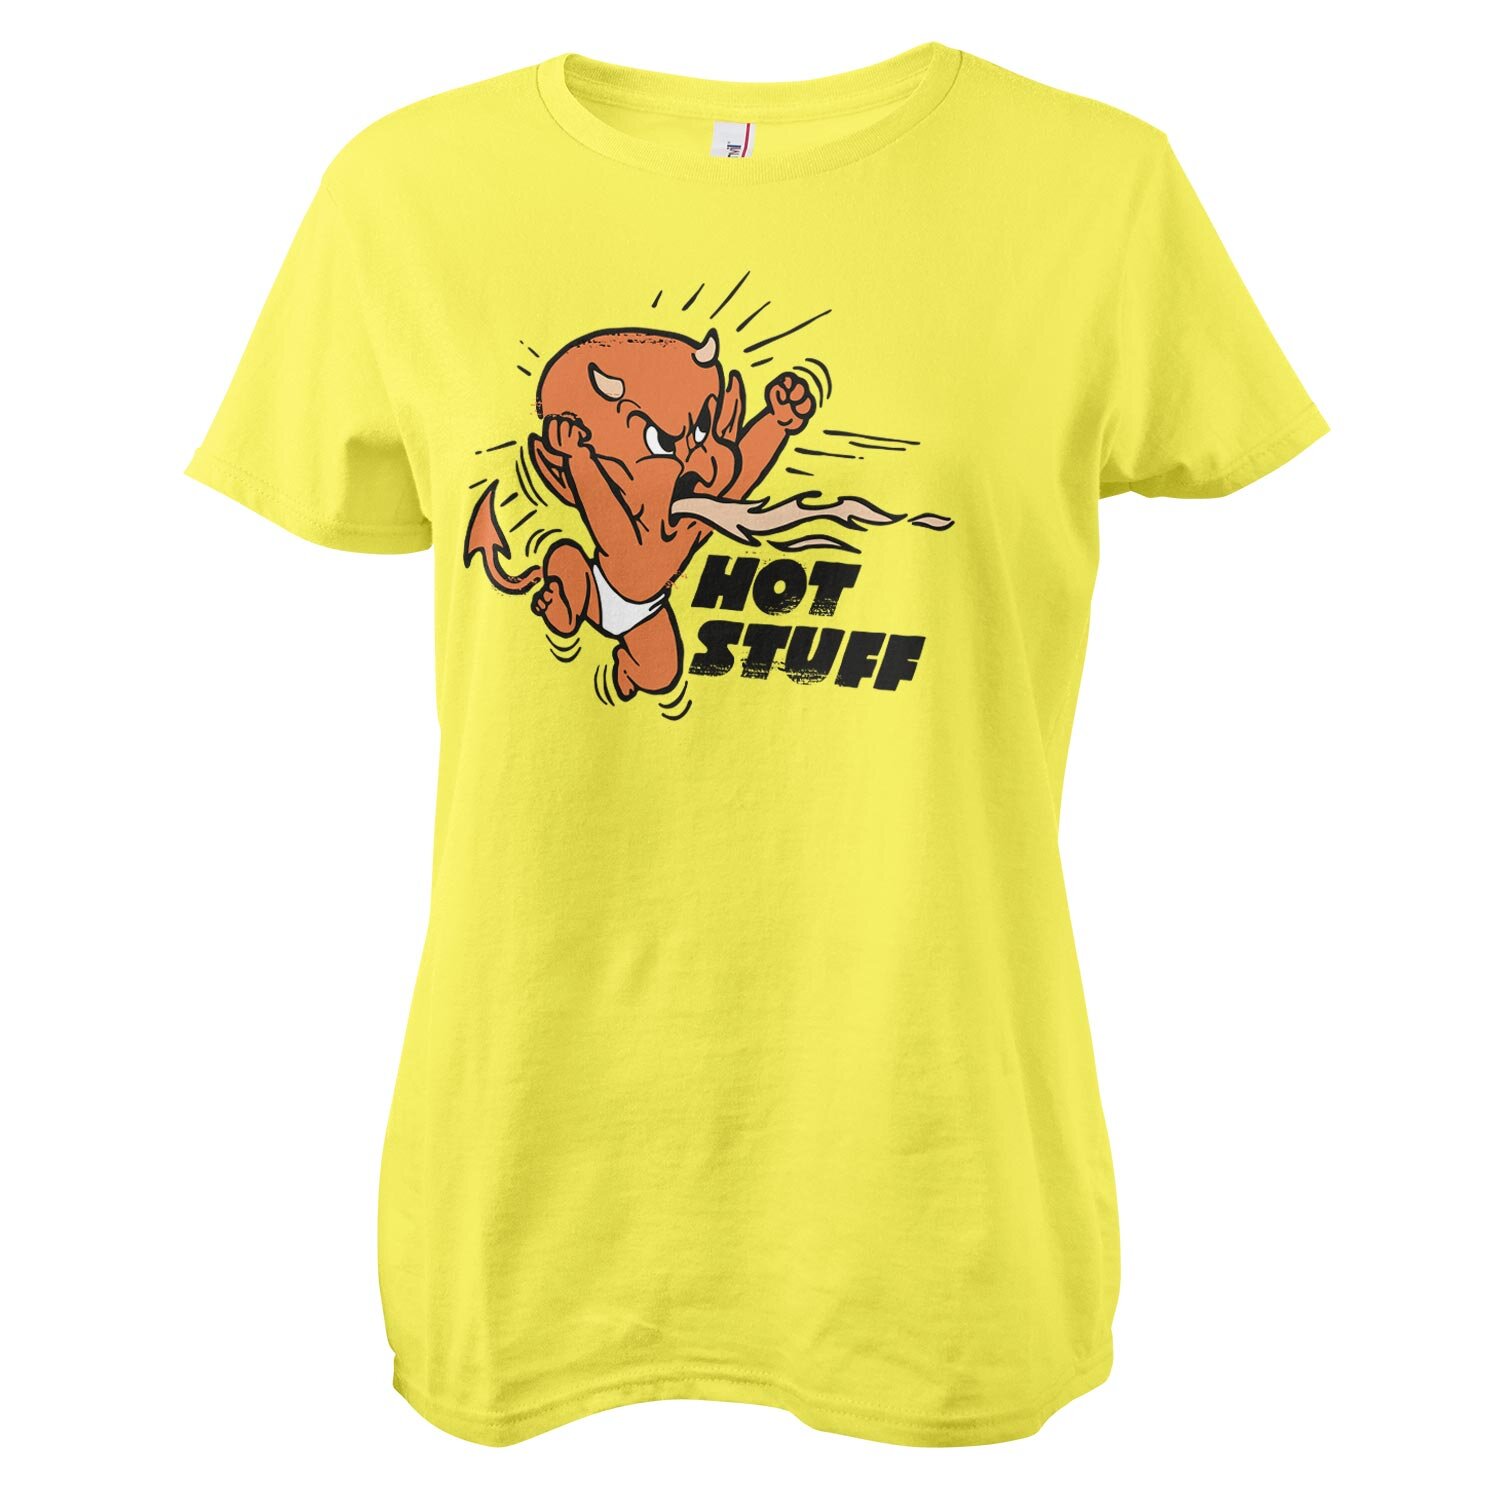 Hot Stuff Retro T-Shirt Girly Tee